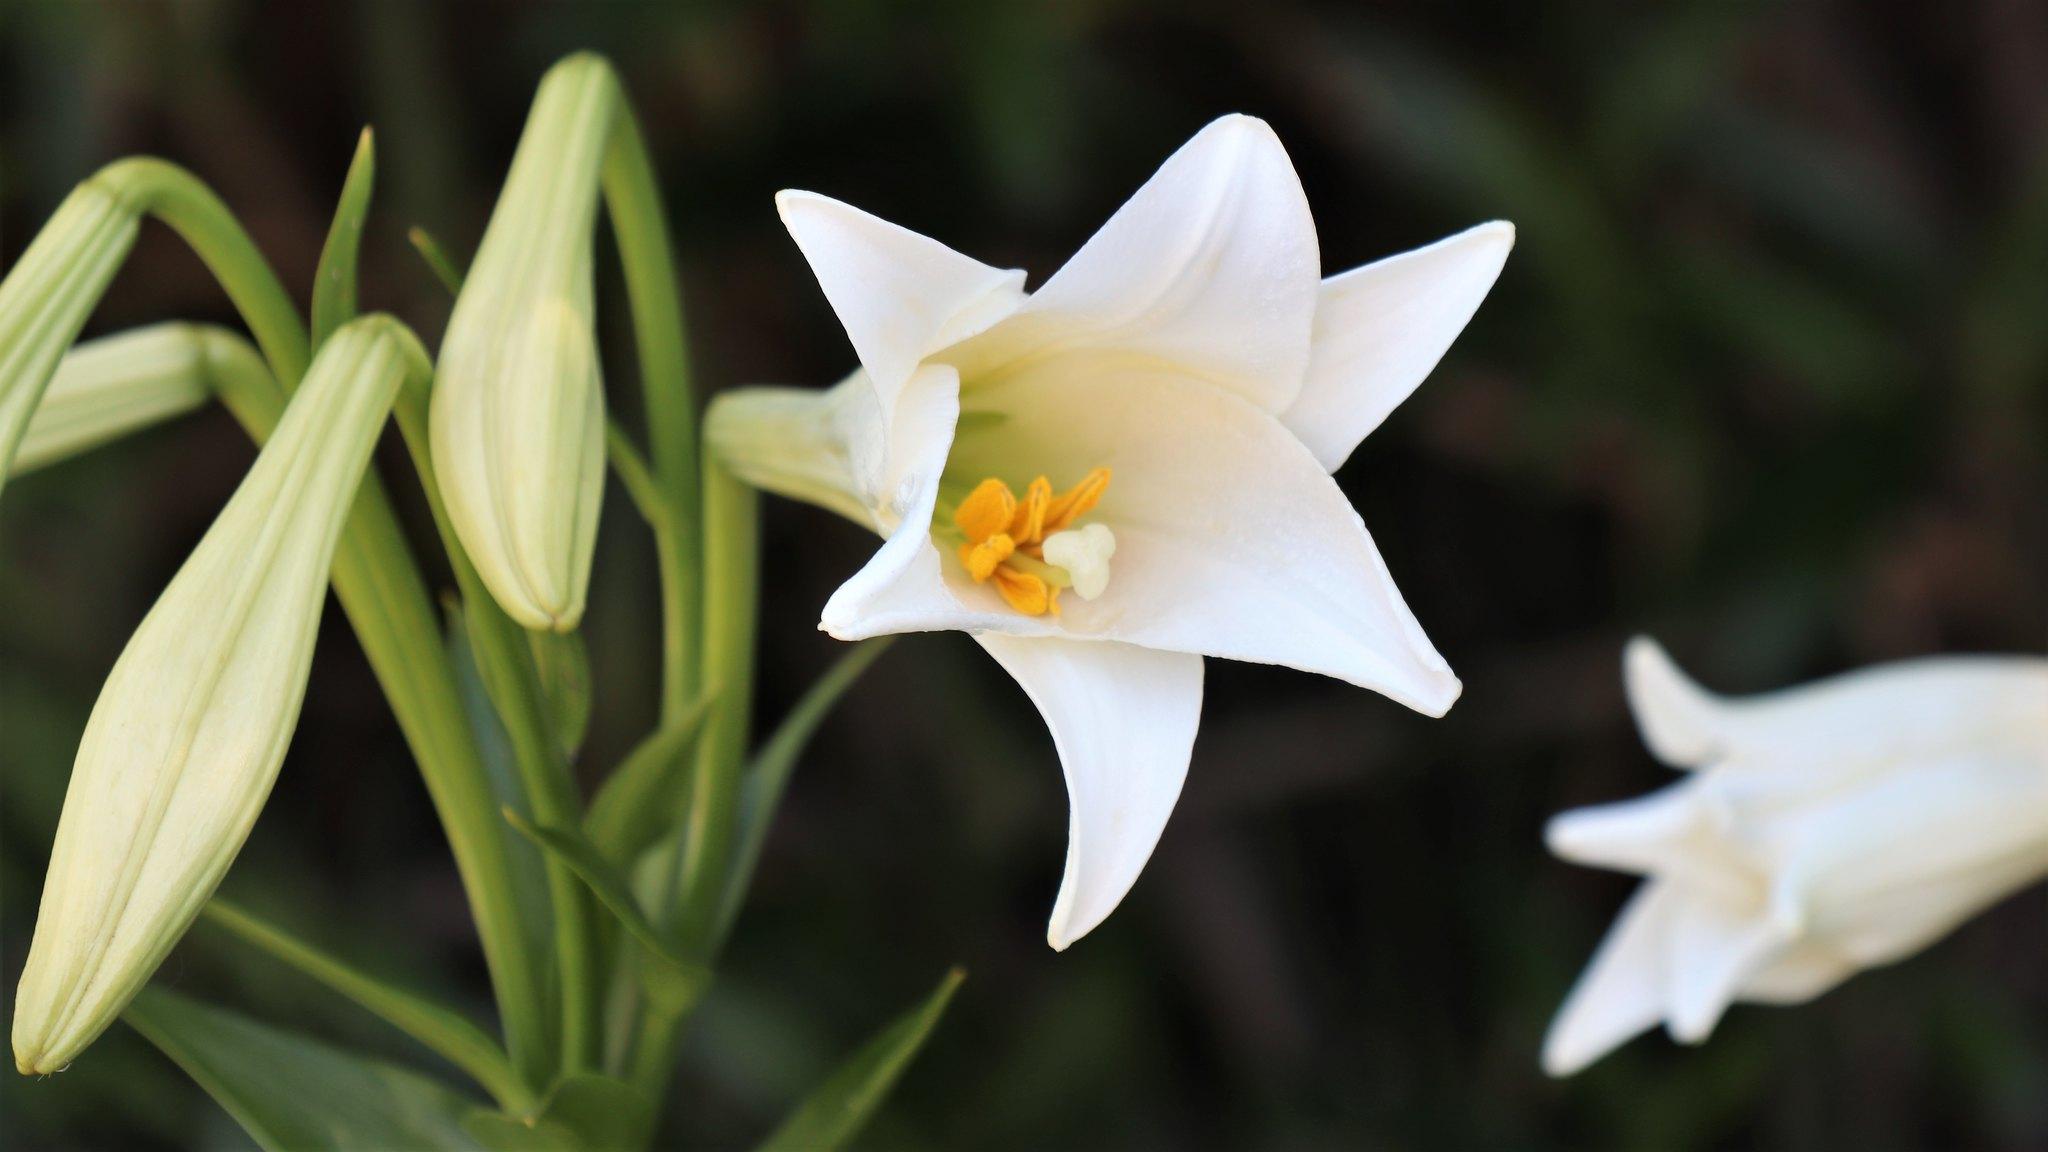 Hoa loa kèn có ý nghĩa gì? Cách trồng và chăm sóc giúp hoa nở đẹp - 5